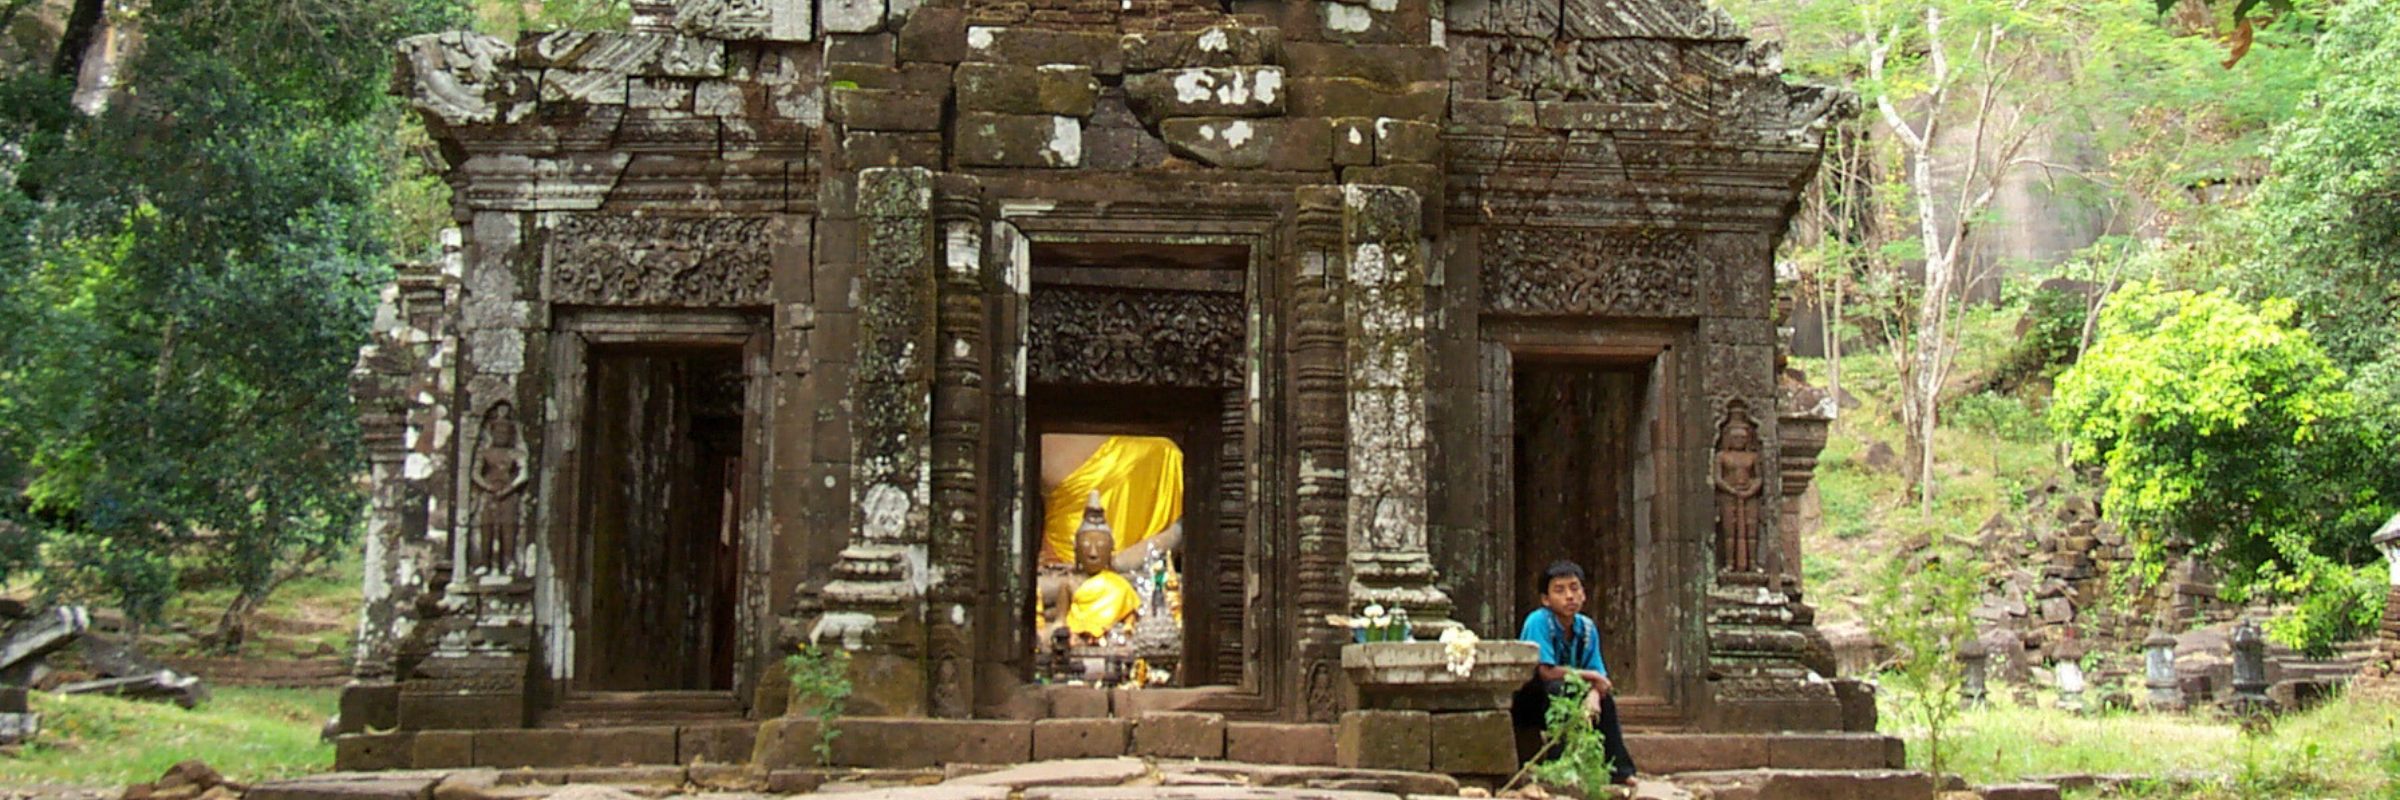 Der Tempel Wat Phou ist das bedeutendste Relikt der Khmer in Laos und zählt zum UNESCO Weltkulturerbe